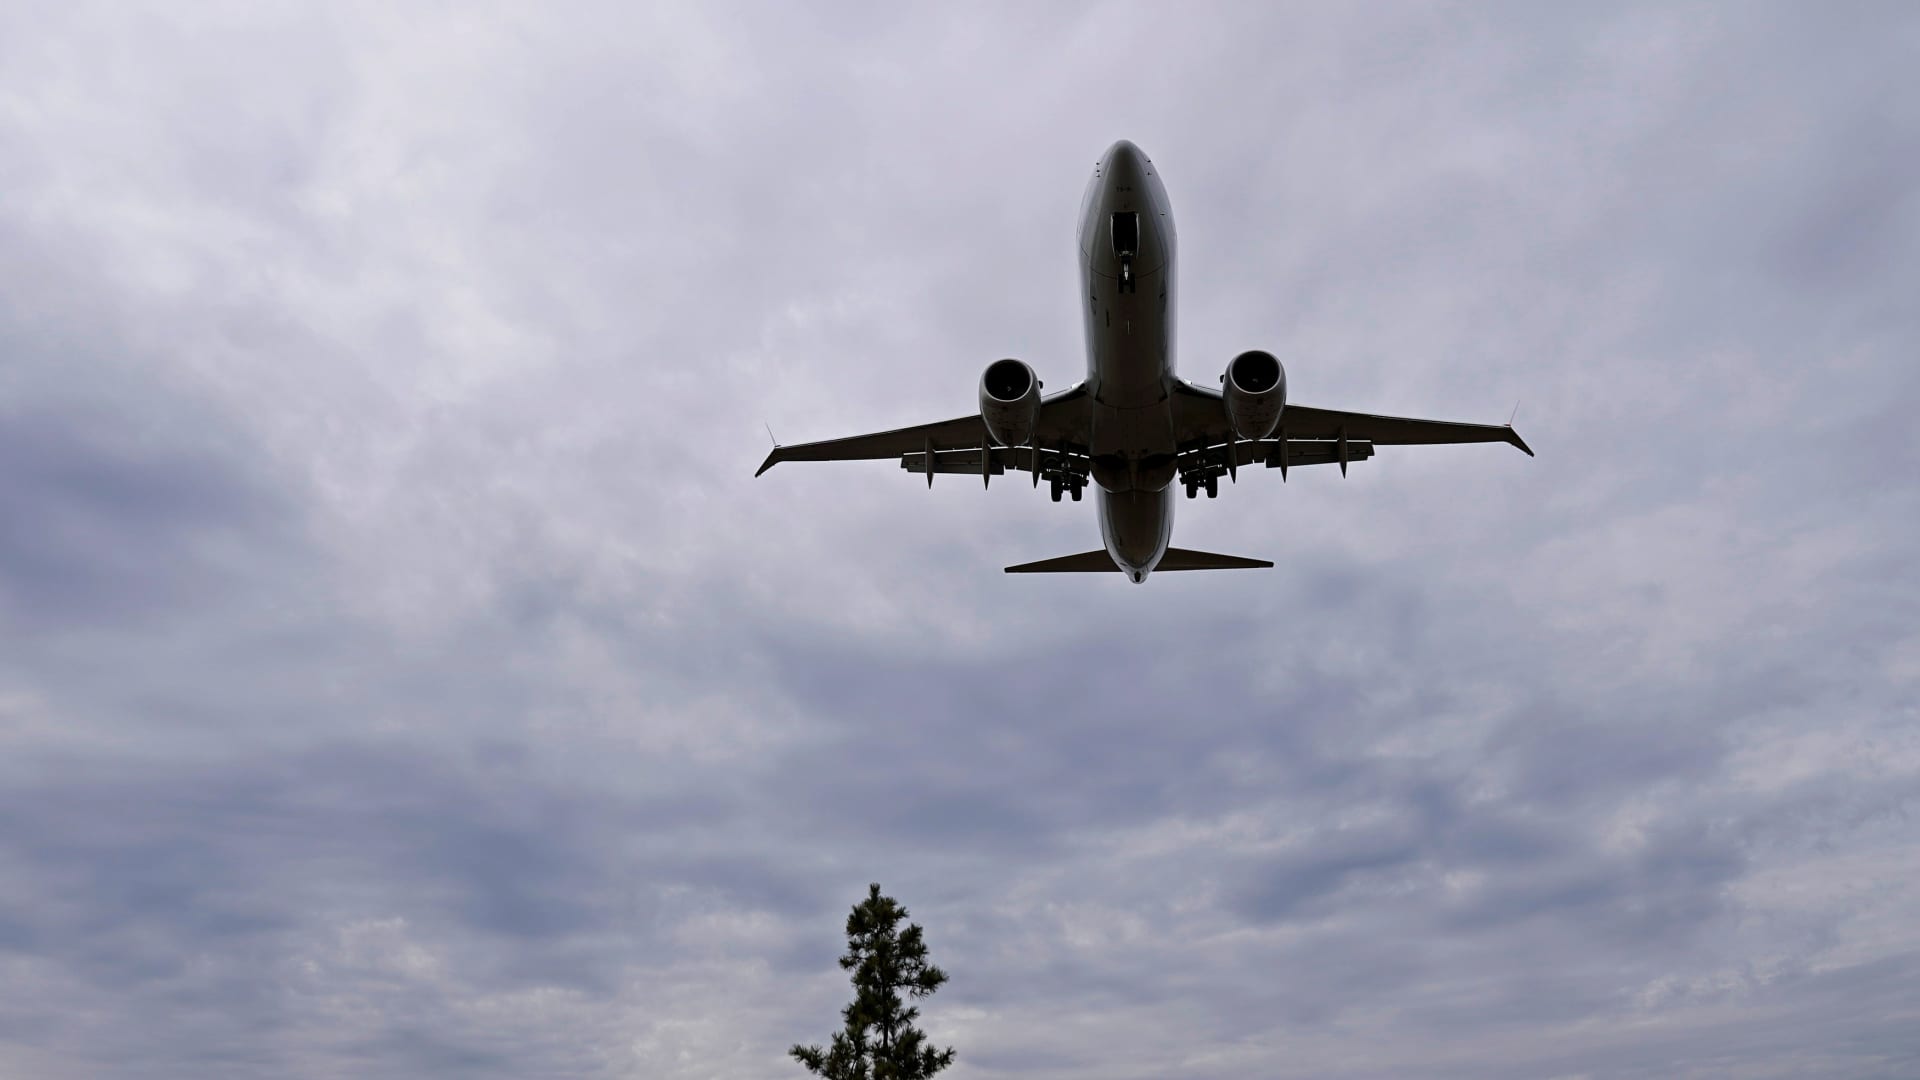 Boeing CFO comments on deliveries, cash flow after Max crisis